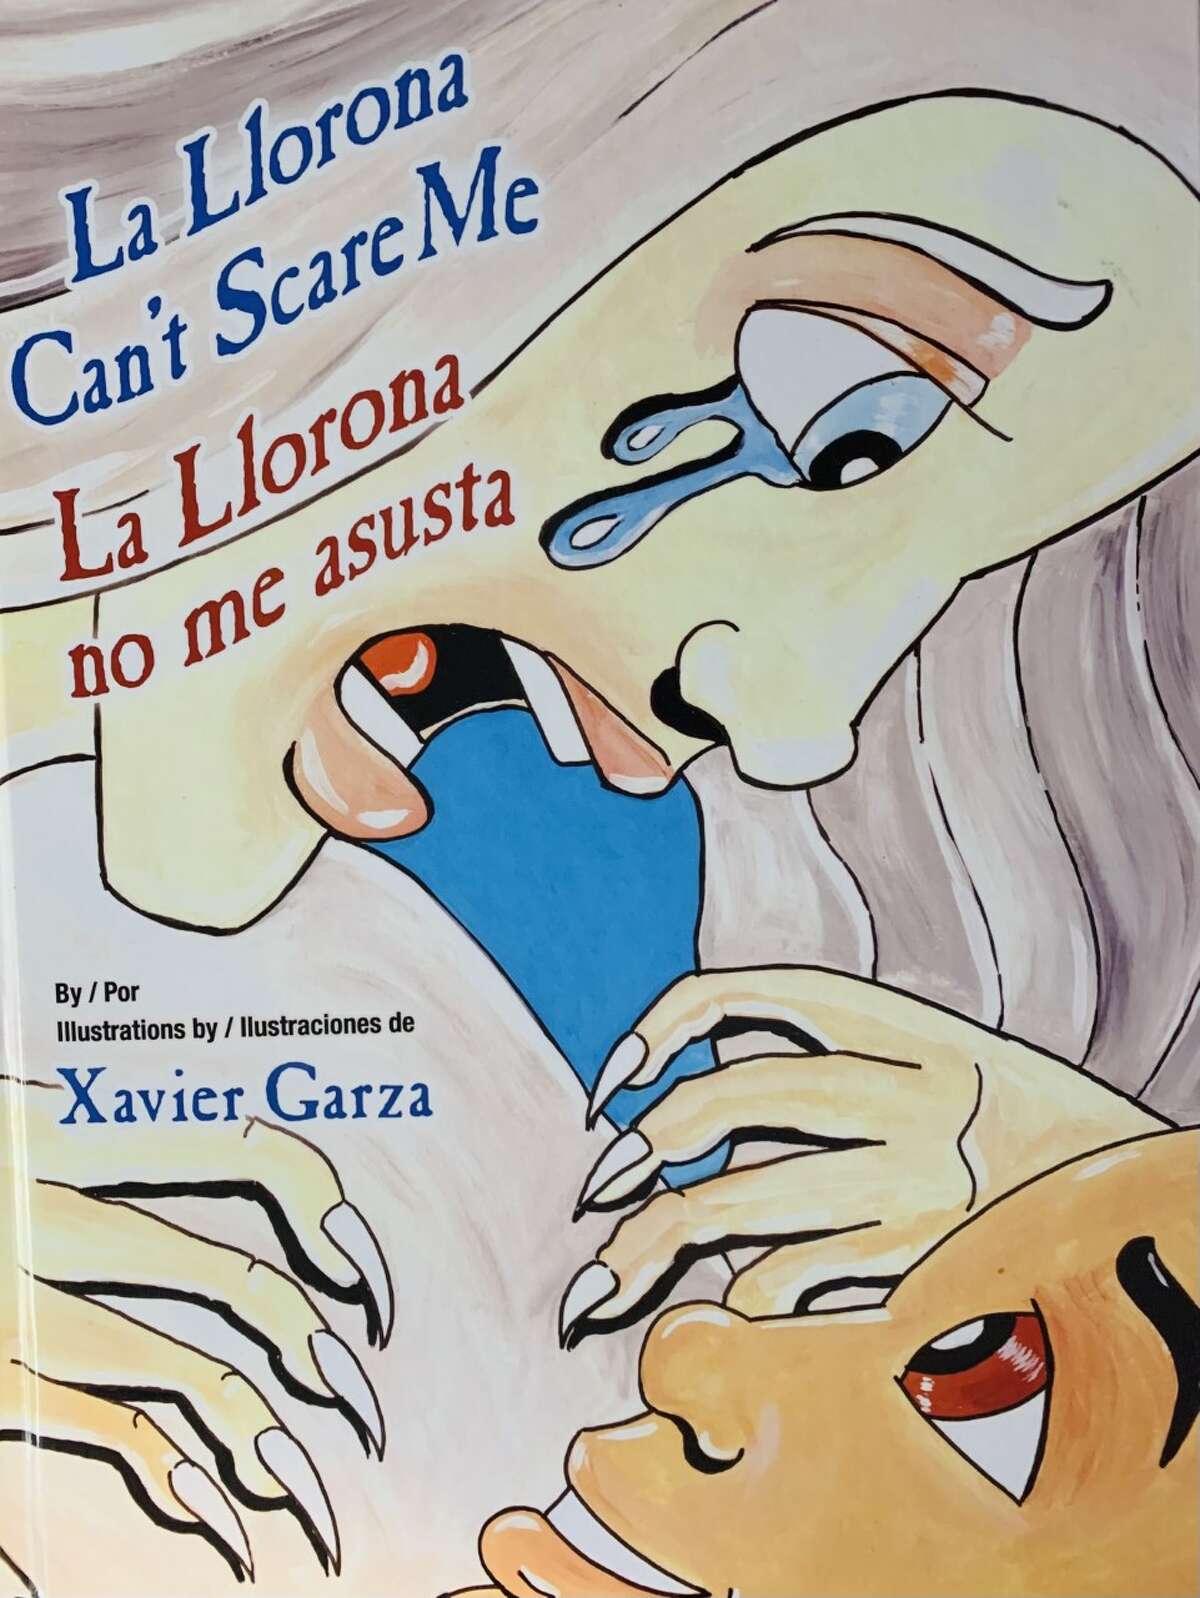 Cover art of 'La Llorana Can't Scare Me' by Xavier Garza.